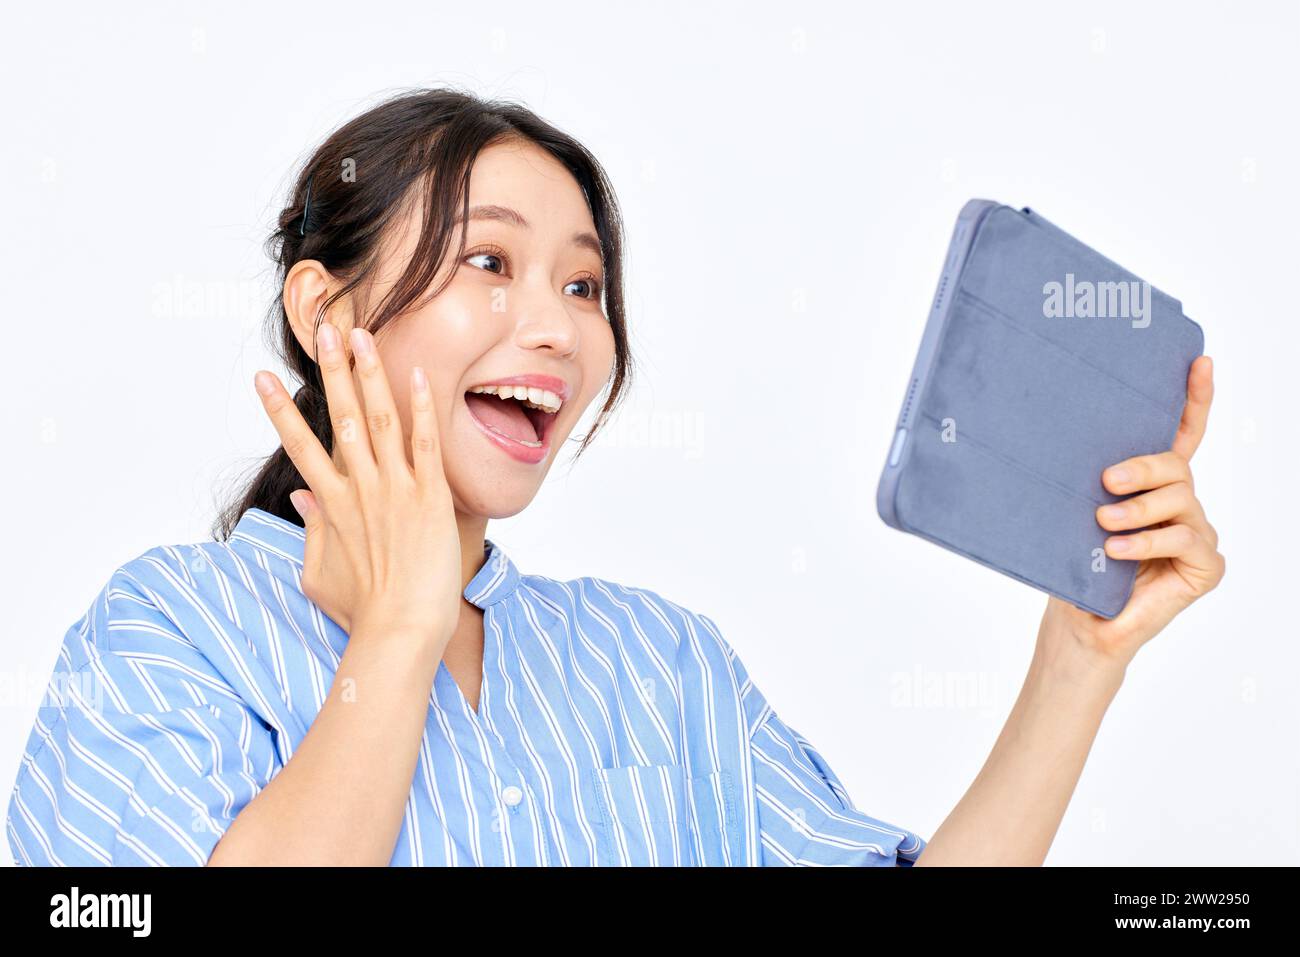 Une femme tenant une tablette et ayant l'air surprise Banque D'Images